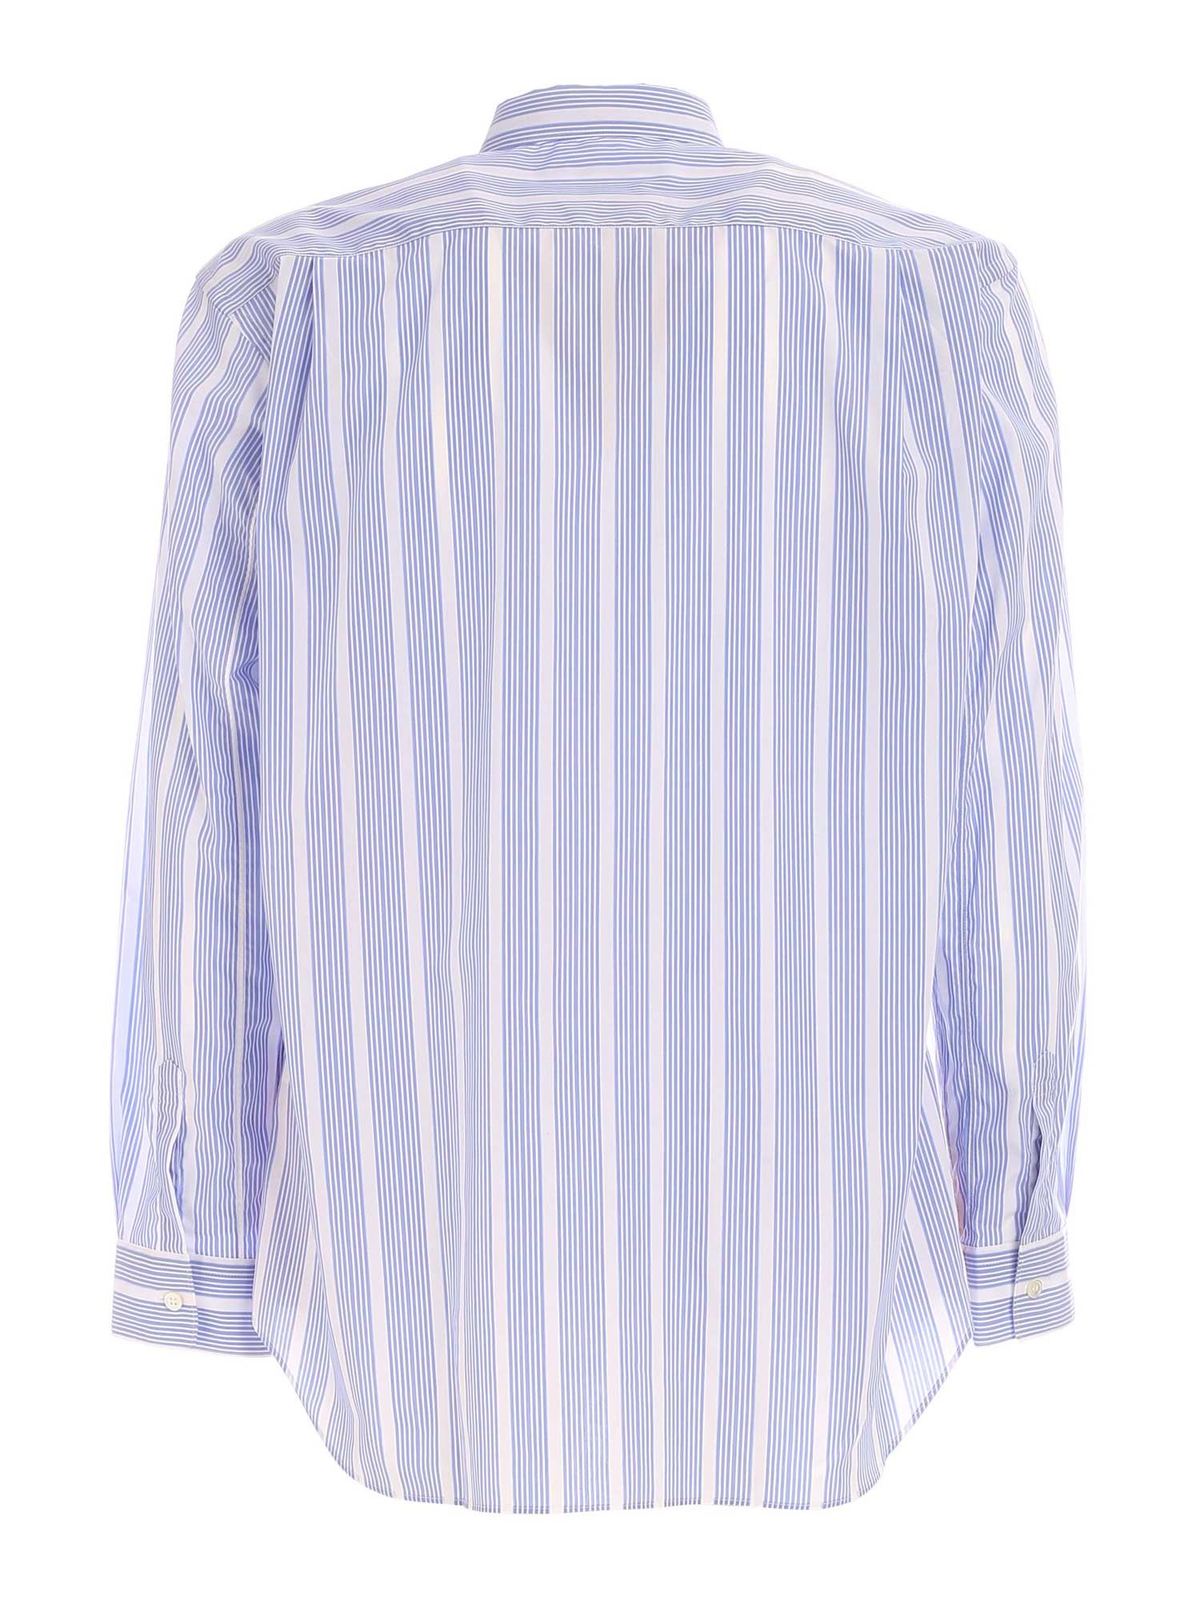 Shirts Comme Des Garcons Shirt - Striped multicolor shirt - S280251